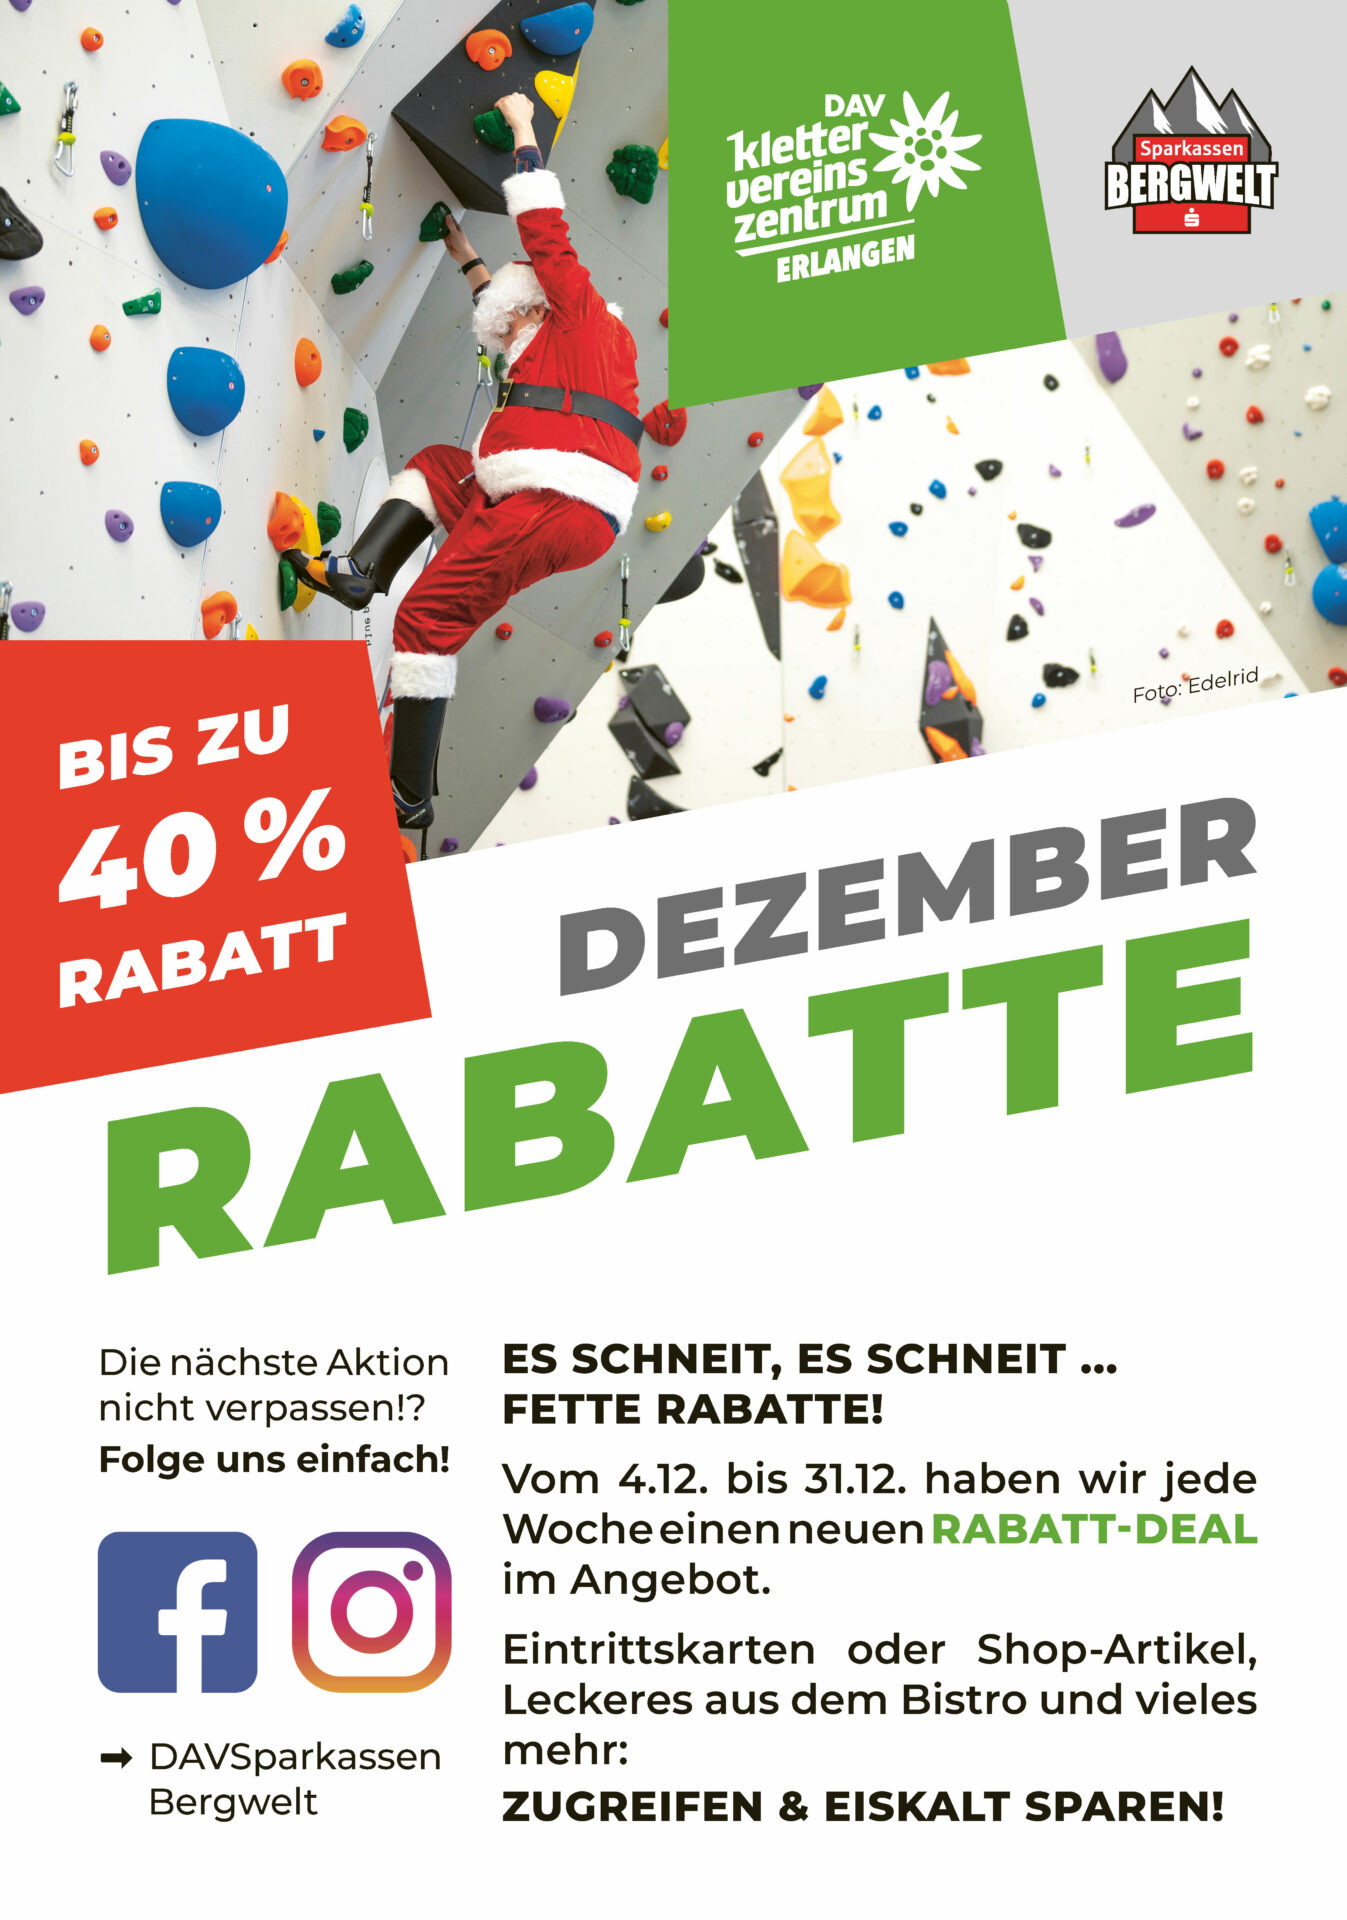 DAV Sparkassen Bergwelt | Rabattaktion Dezember 2023 | Foto: S. Riedl